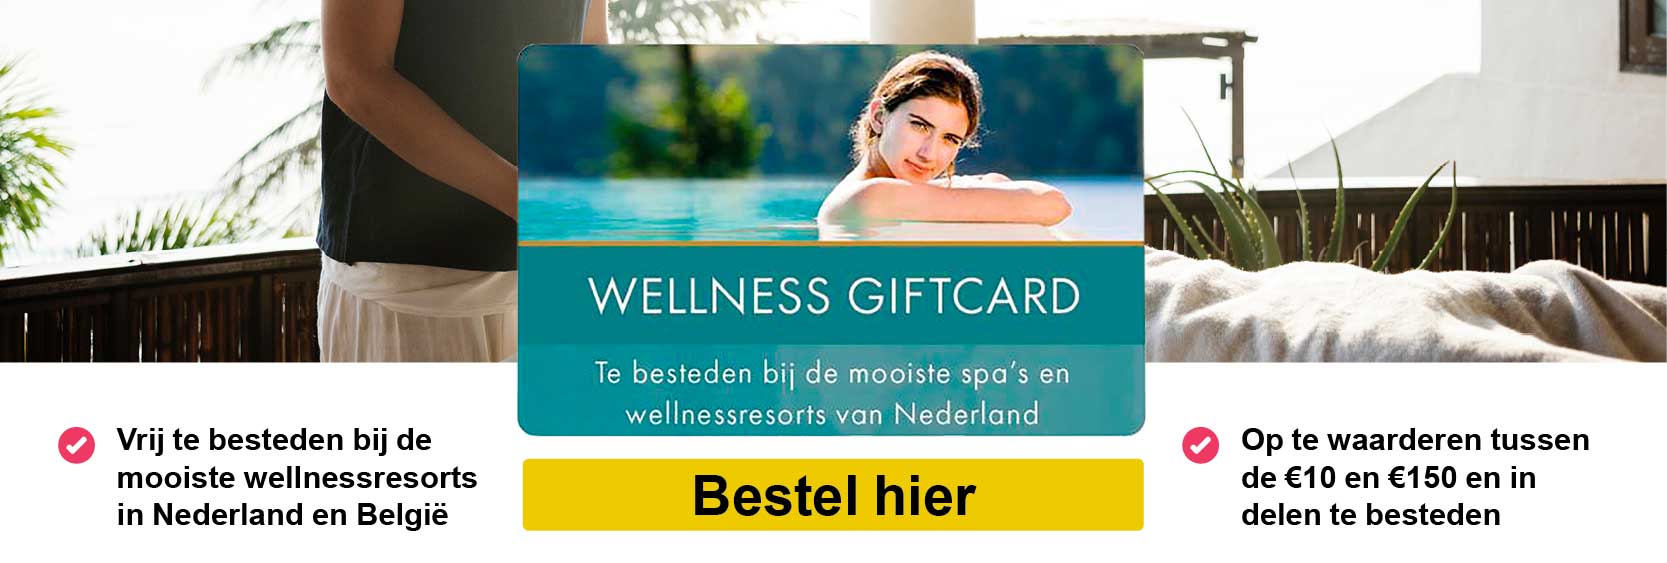 Wellness_card_banner_def